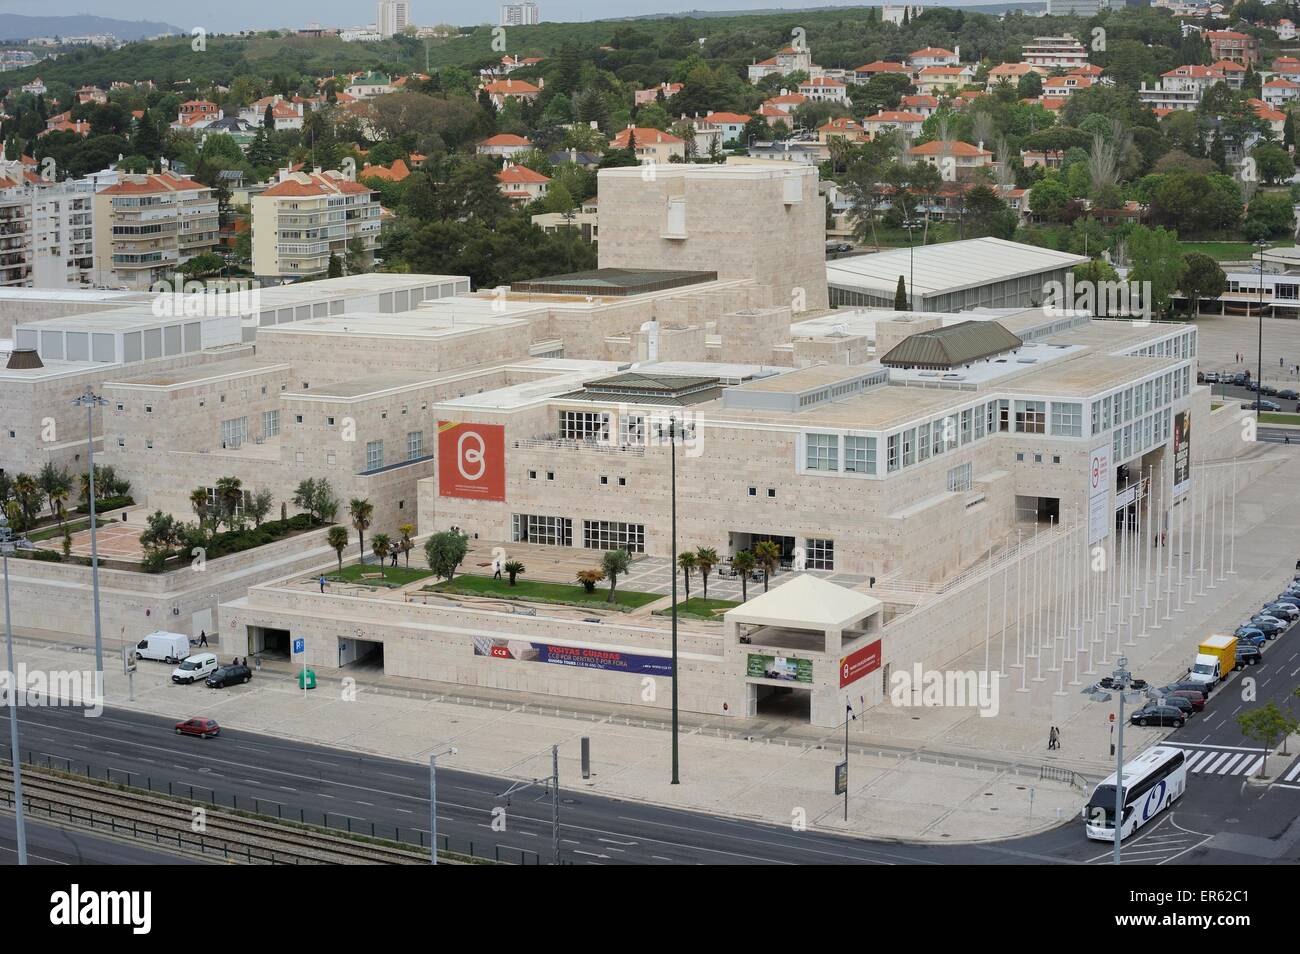 Cultural Center of Belem, Belem, Lisbon, Portugal Stock Photo